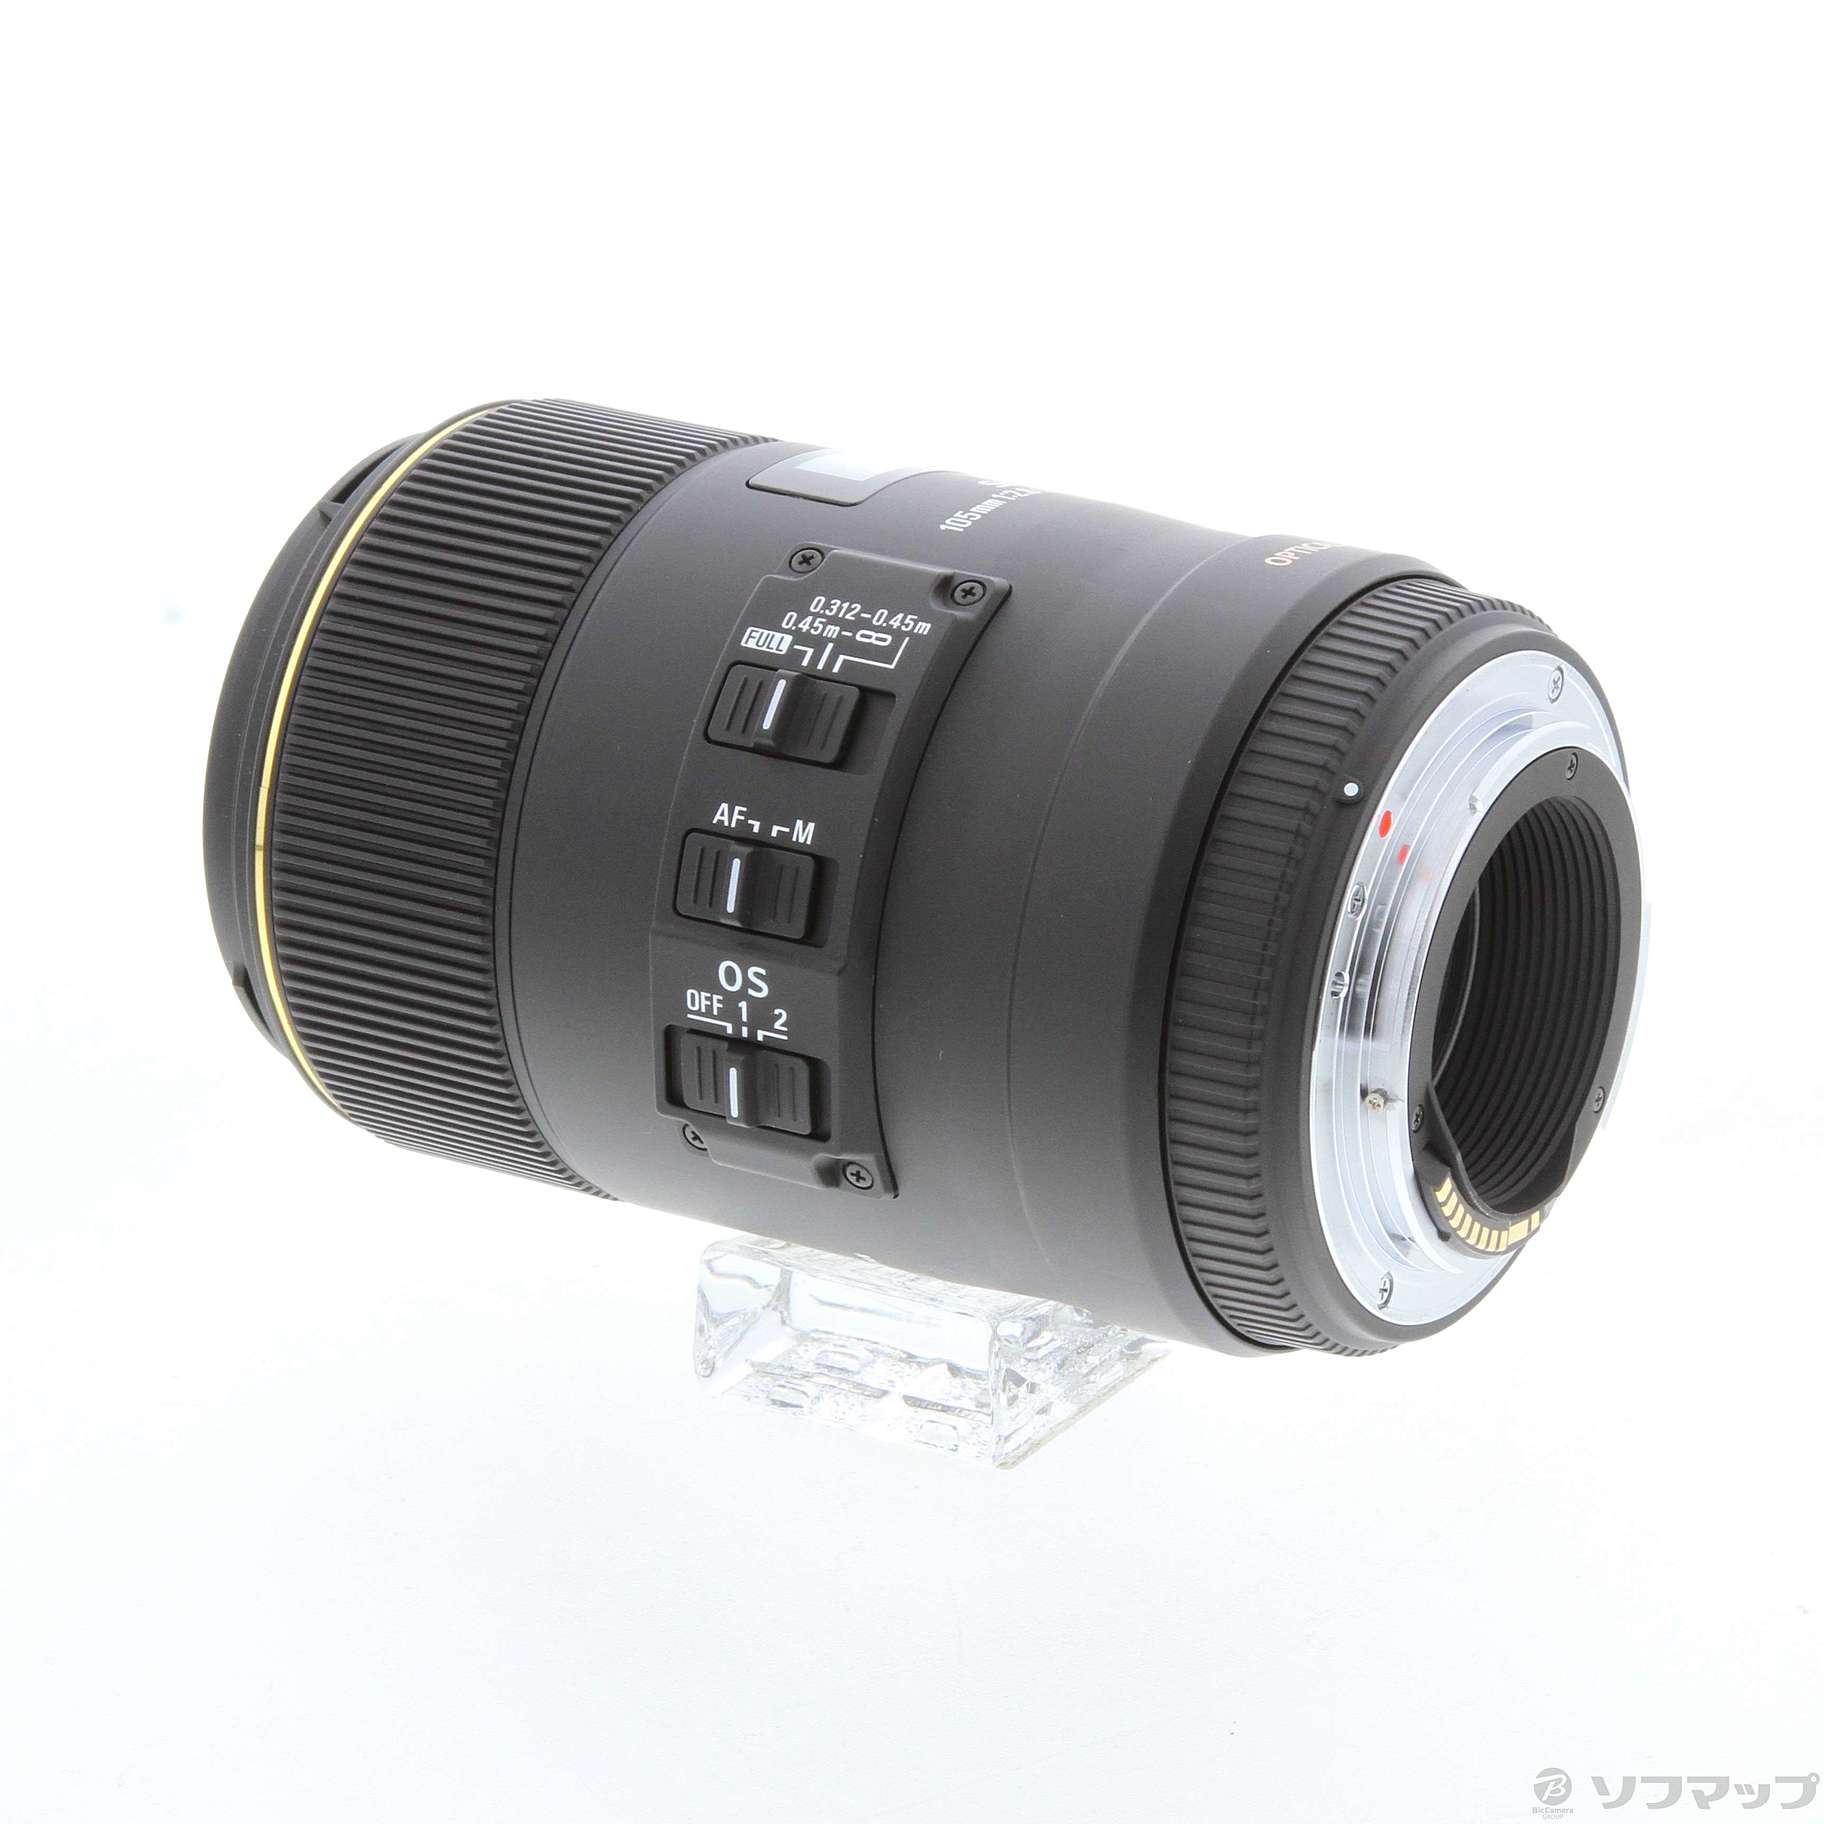 〔展示品〕 SIGMA AF MACRO 105mm F2.8 EX DG OS HSM (Canon用) (レンズ)